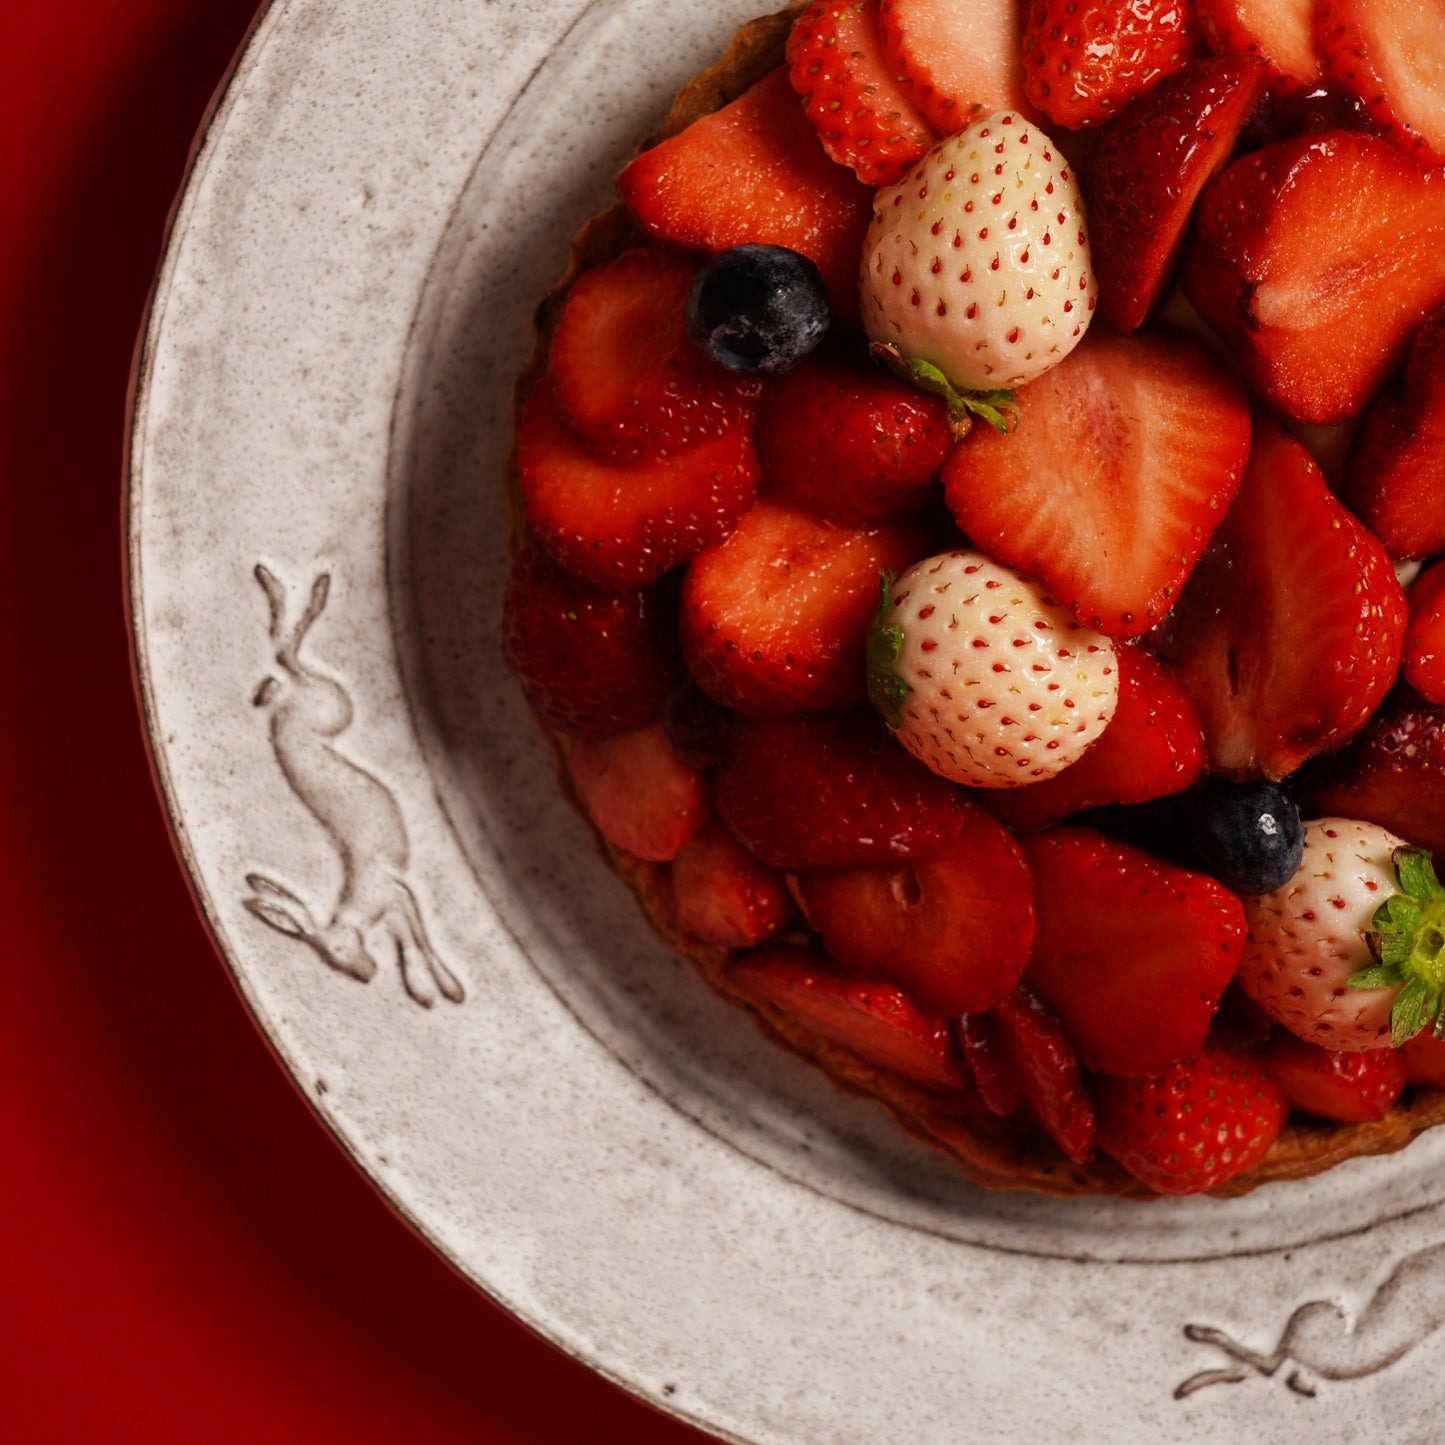 日本草莓純素拿破崙撻 Japanese Strawberry Vegan Mille Feuille Tart